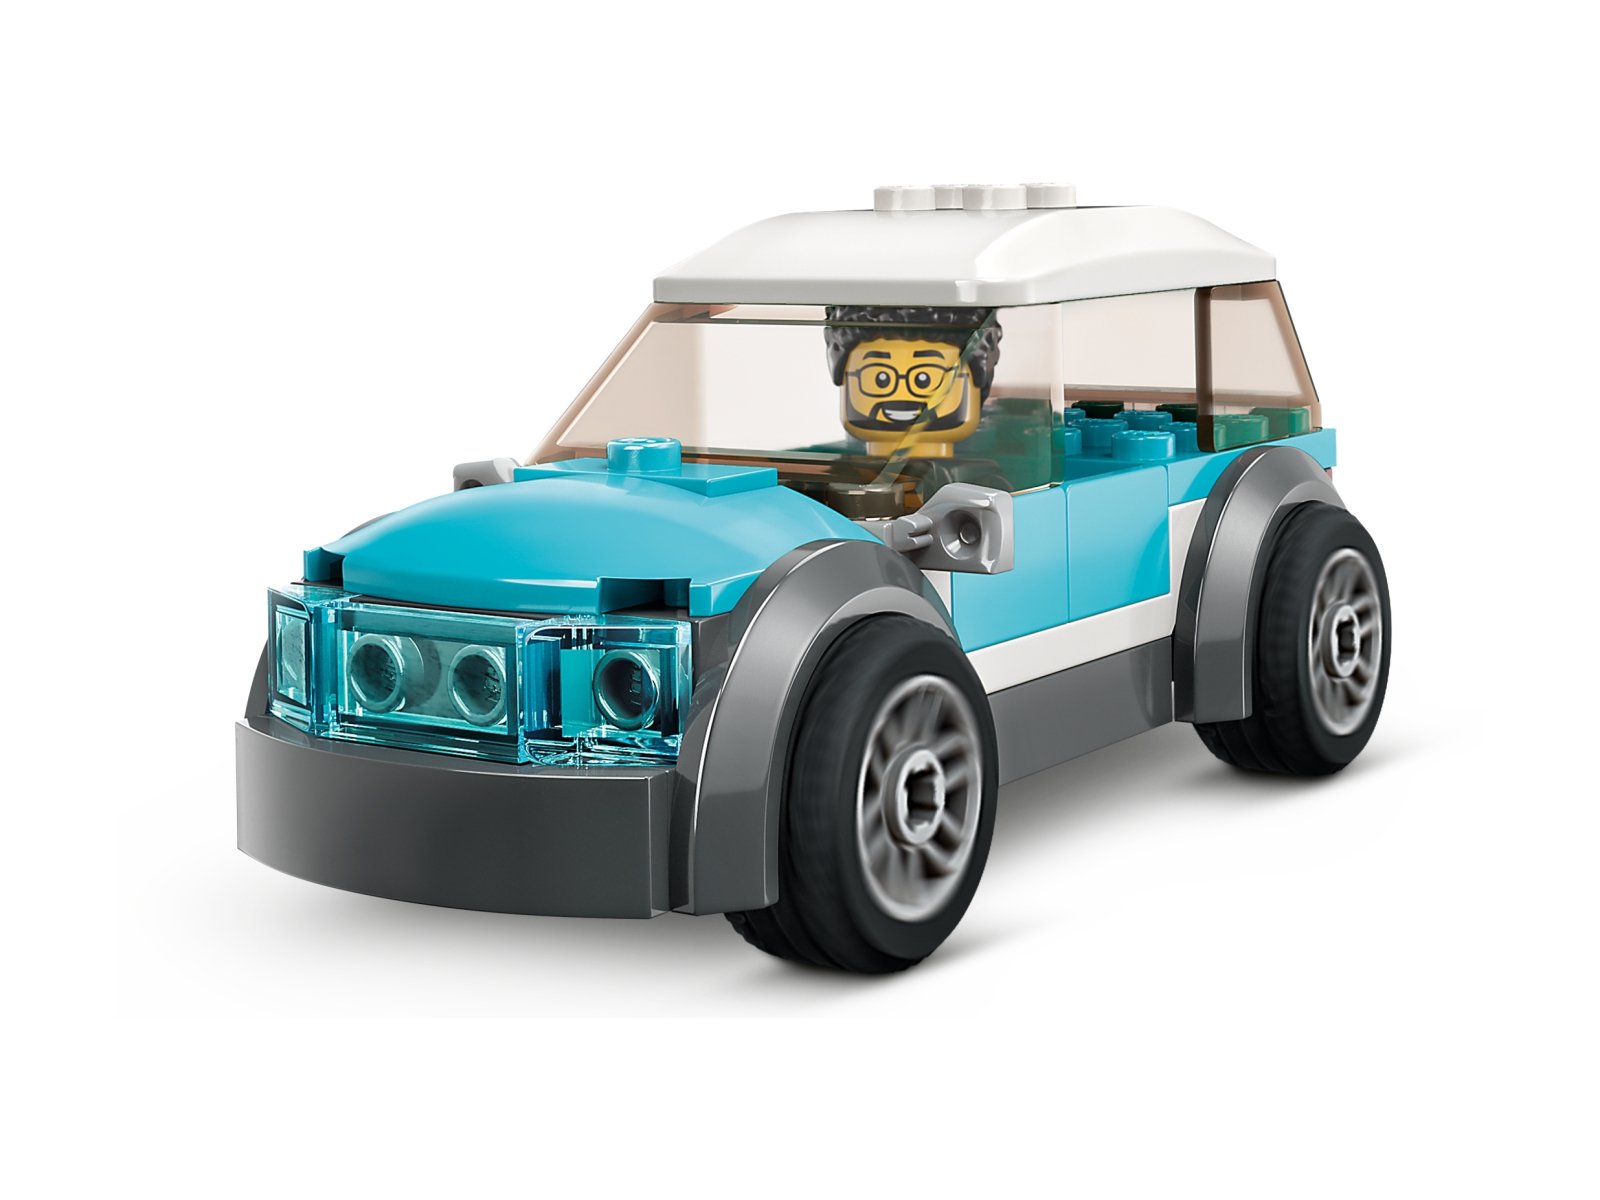 LEGO 60398 Domek rodzinny i samochód elektryczny